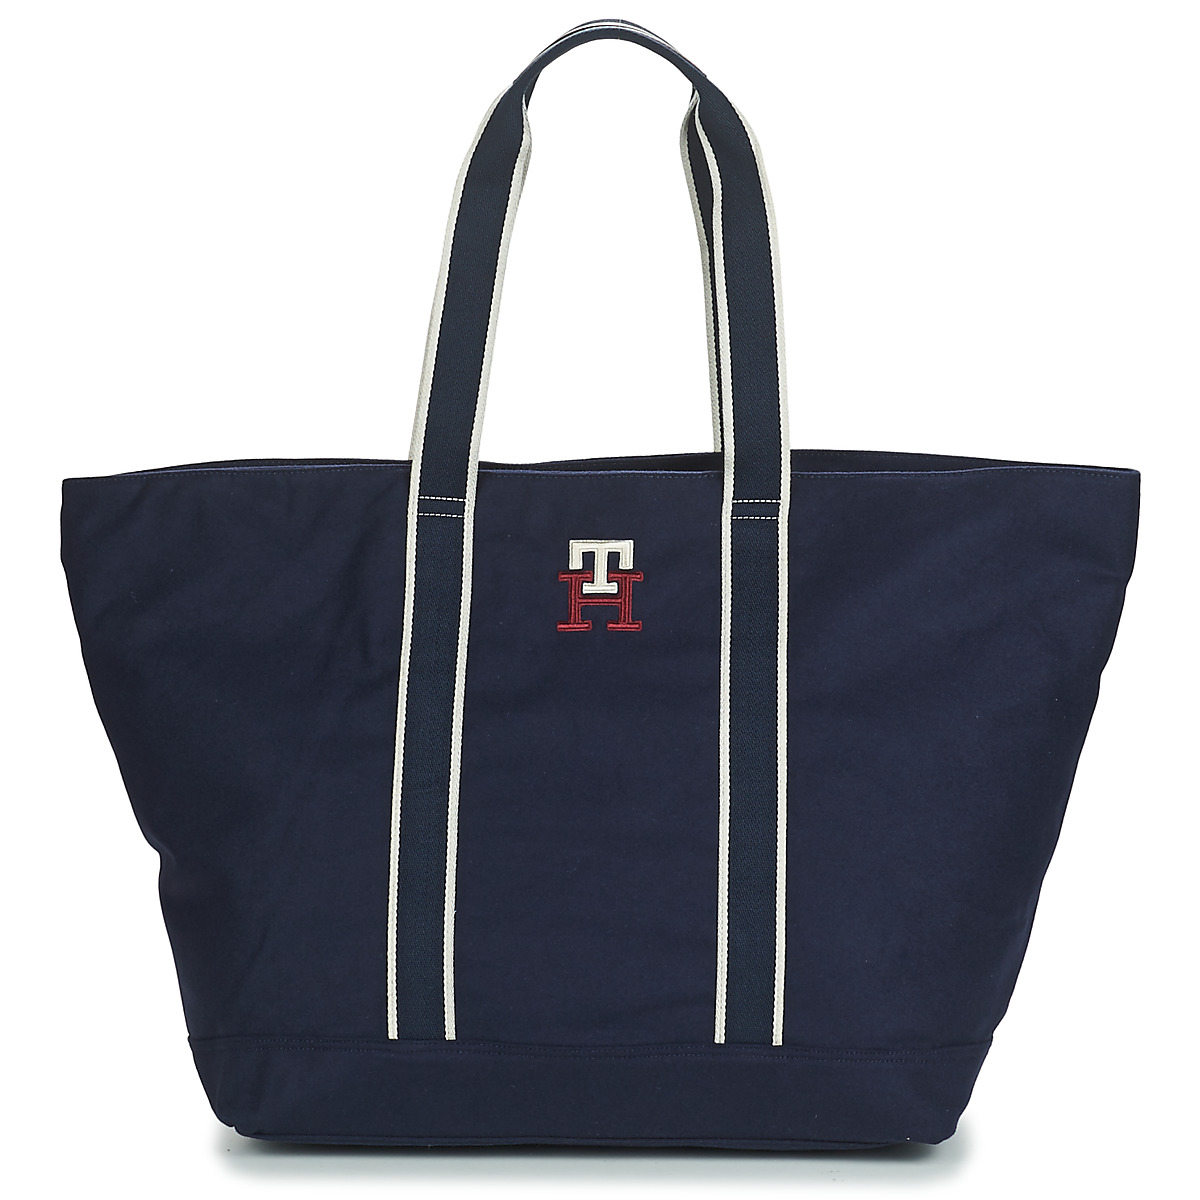 Taška Velké kabelky / Nákupní tašky Tommy Hilfiger NEW PREP OVERSIZED TOTE Tmavě modrá